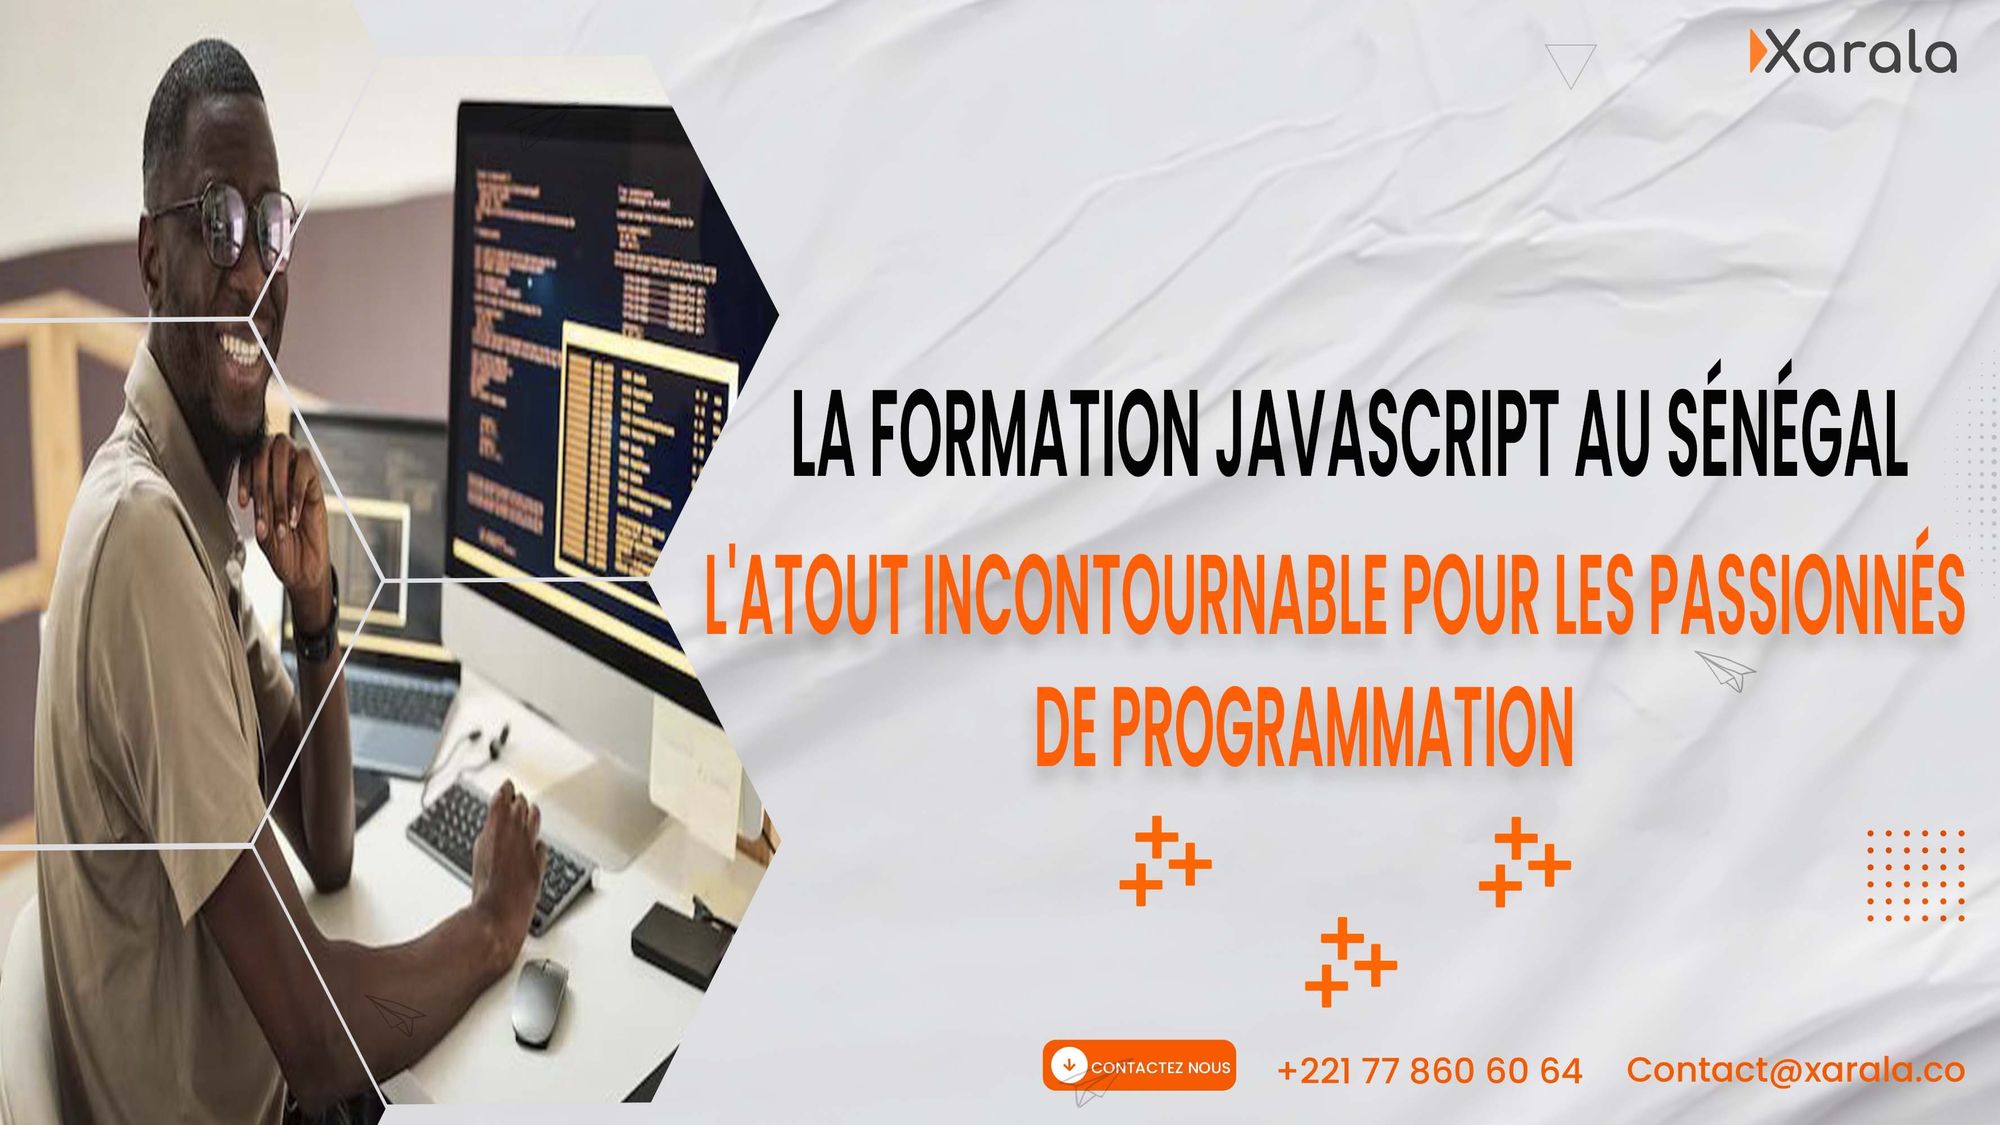 La formation JavaScript au Sénégal : L'atout incontournable pour les passionnés de programmation